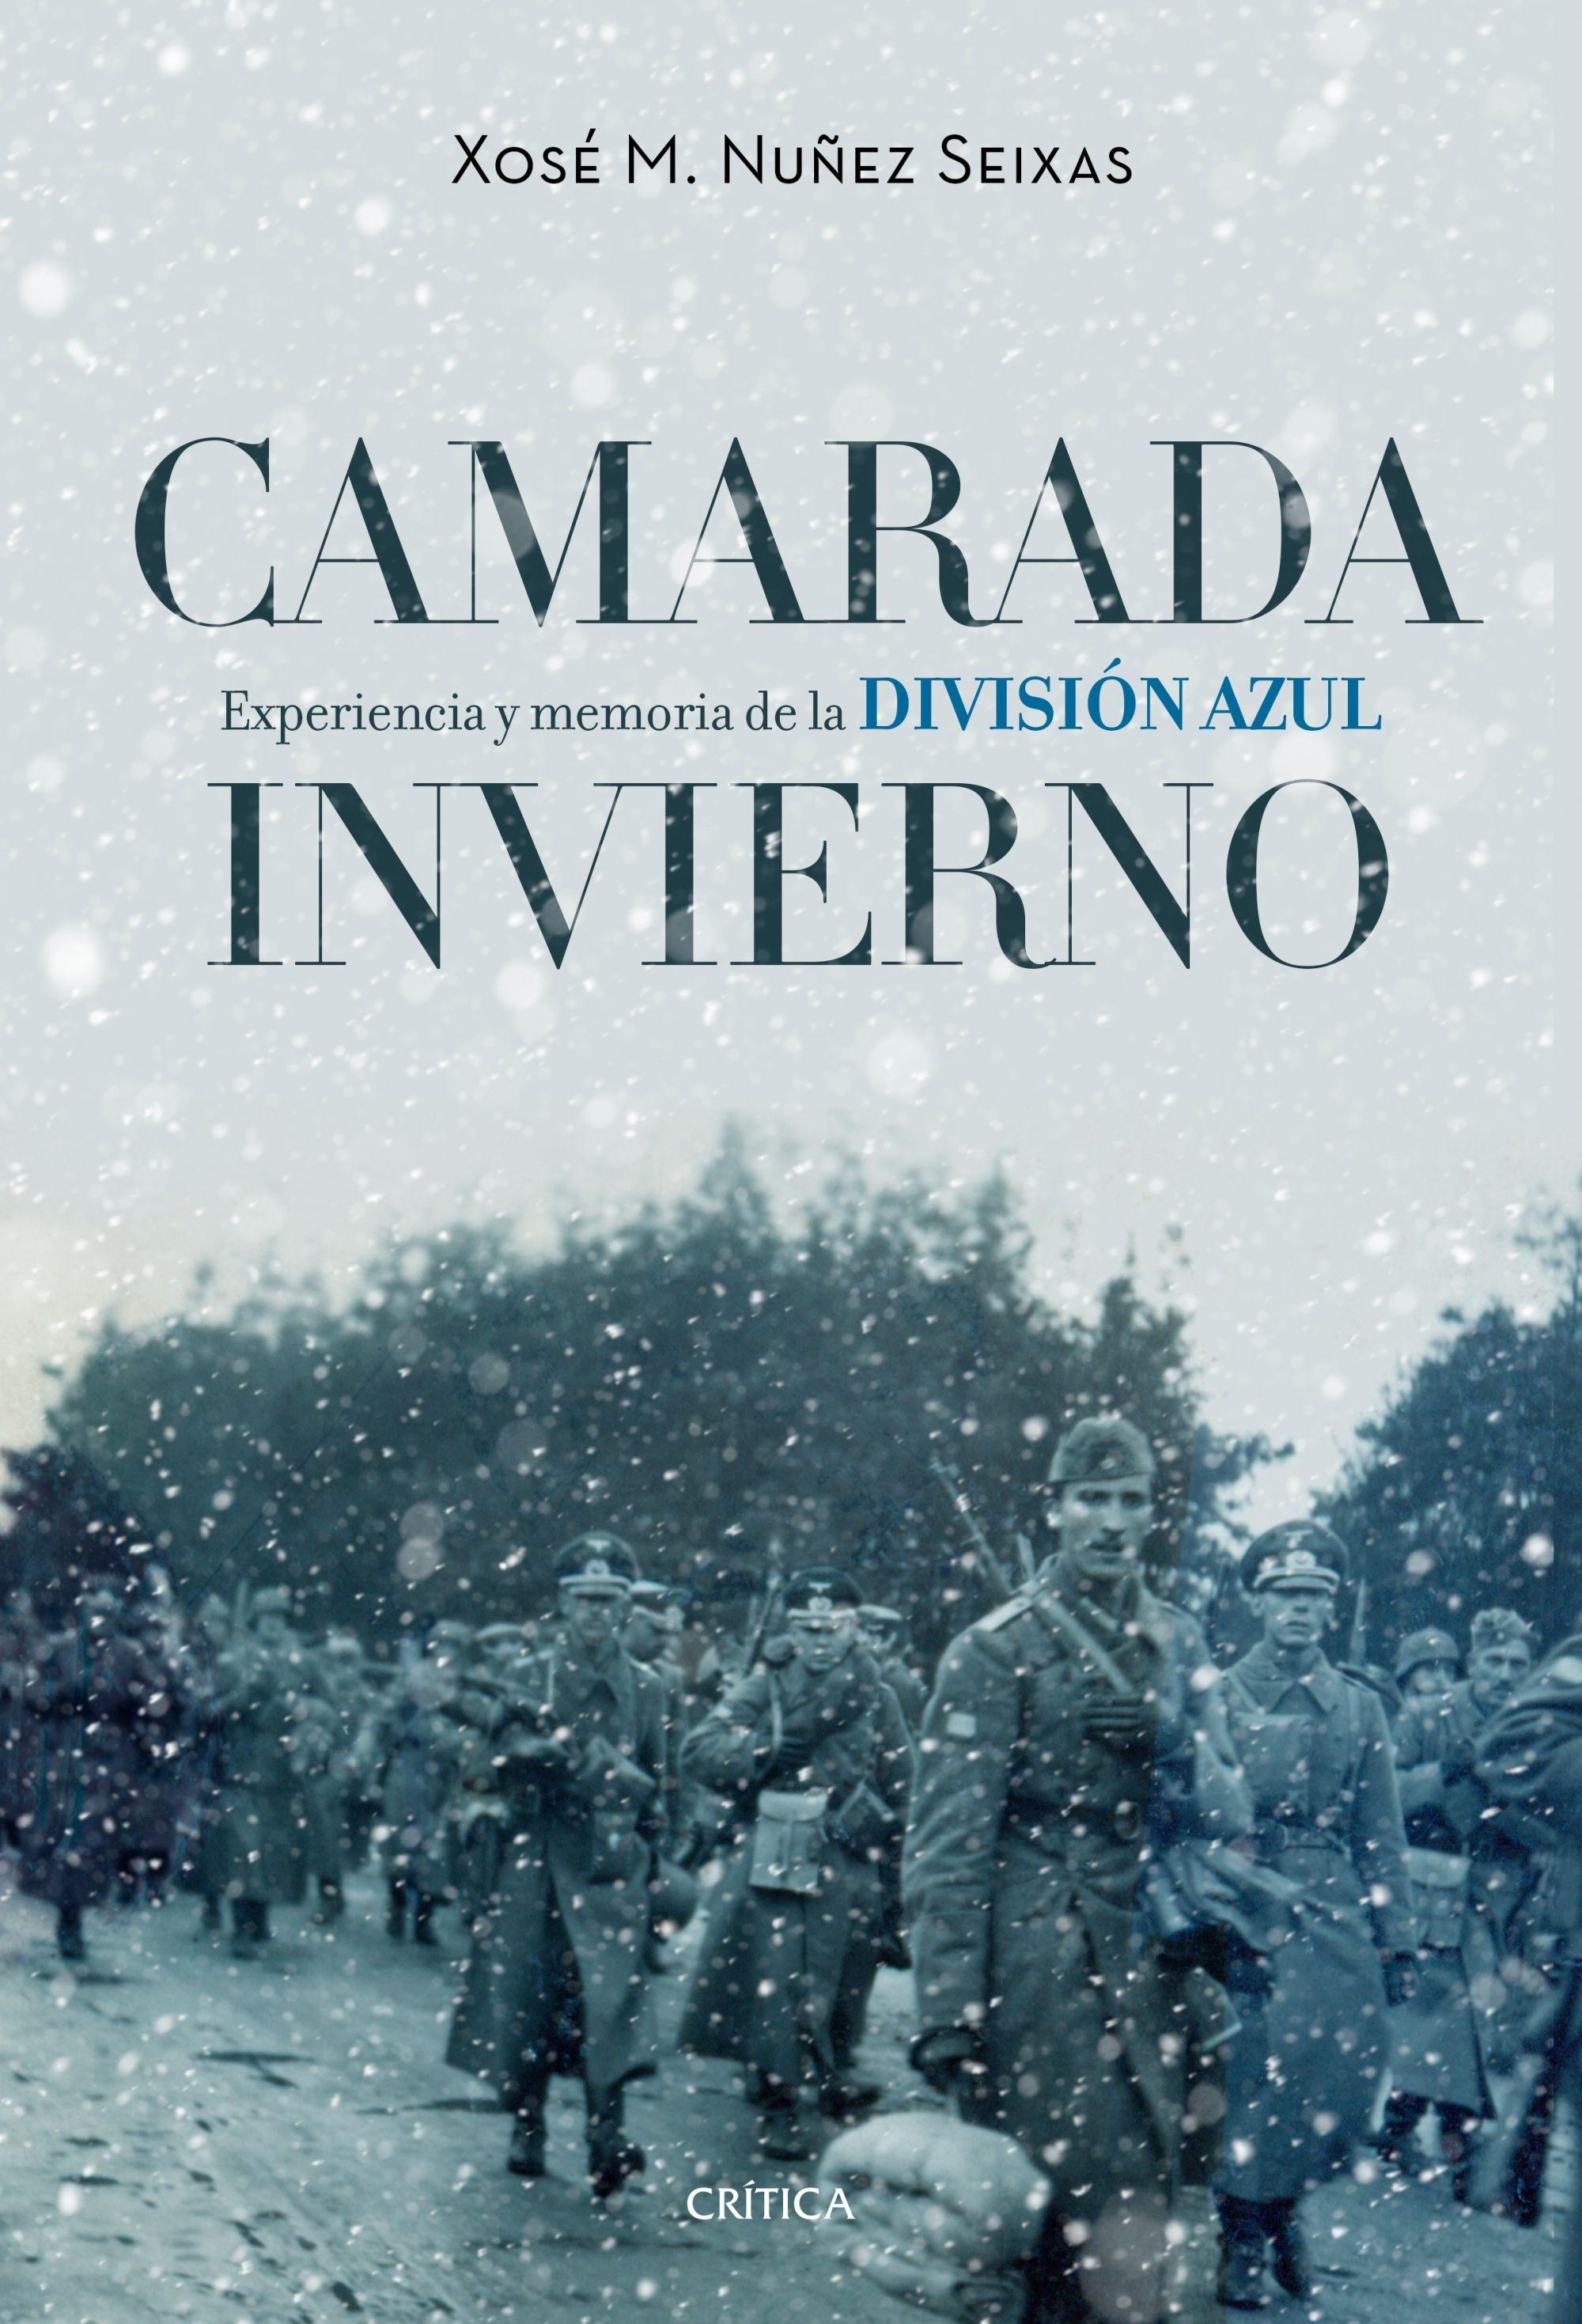 Camarada Invierno "Experiencia y Memoria de la División Azul (1941-1945)"